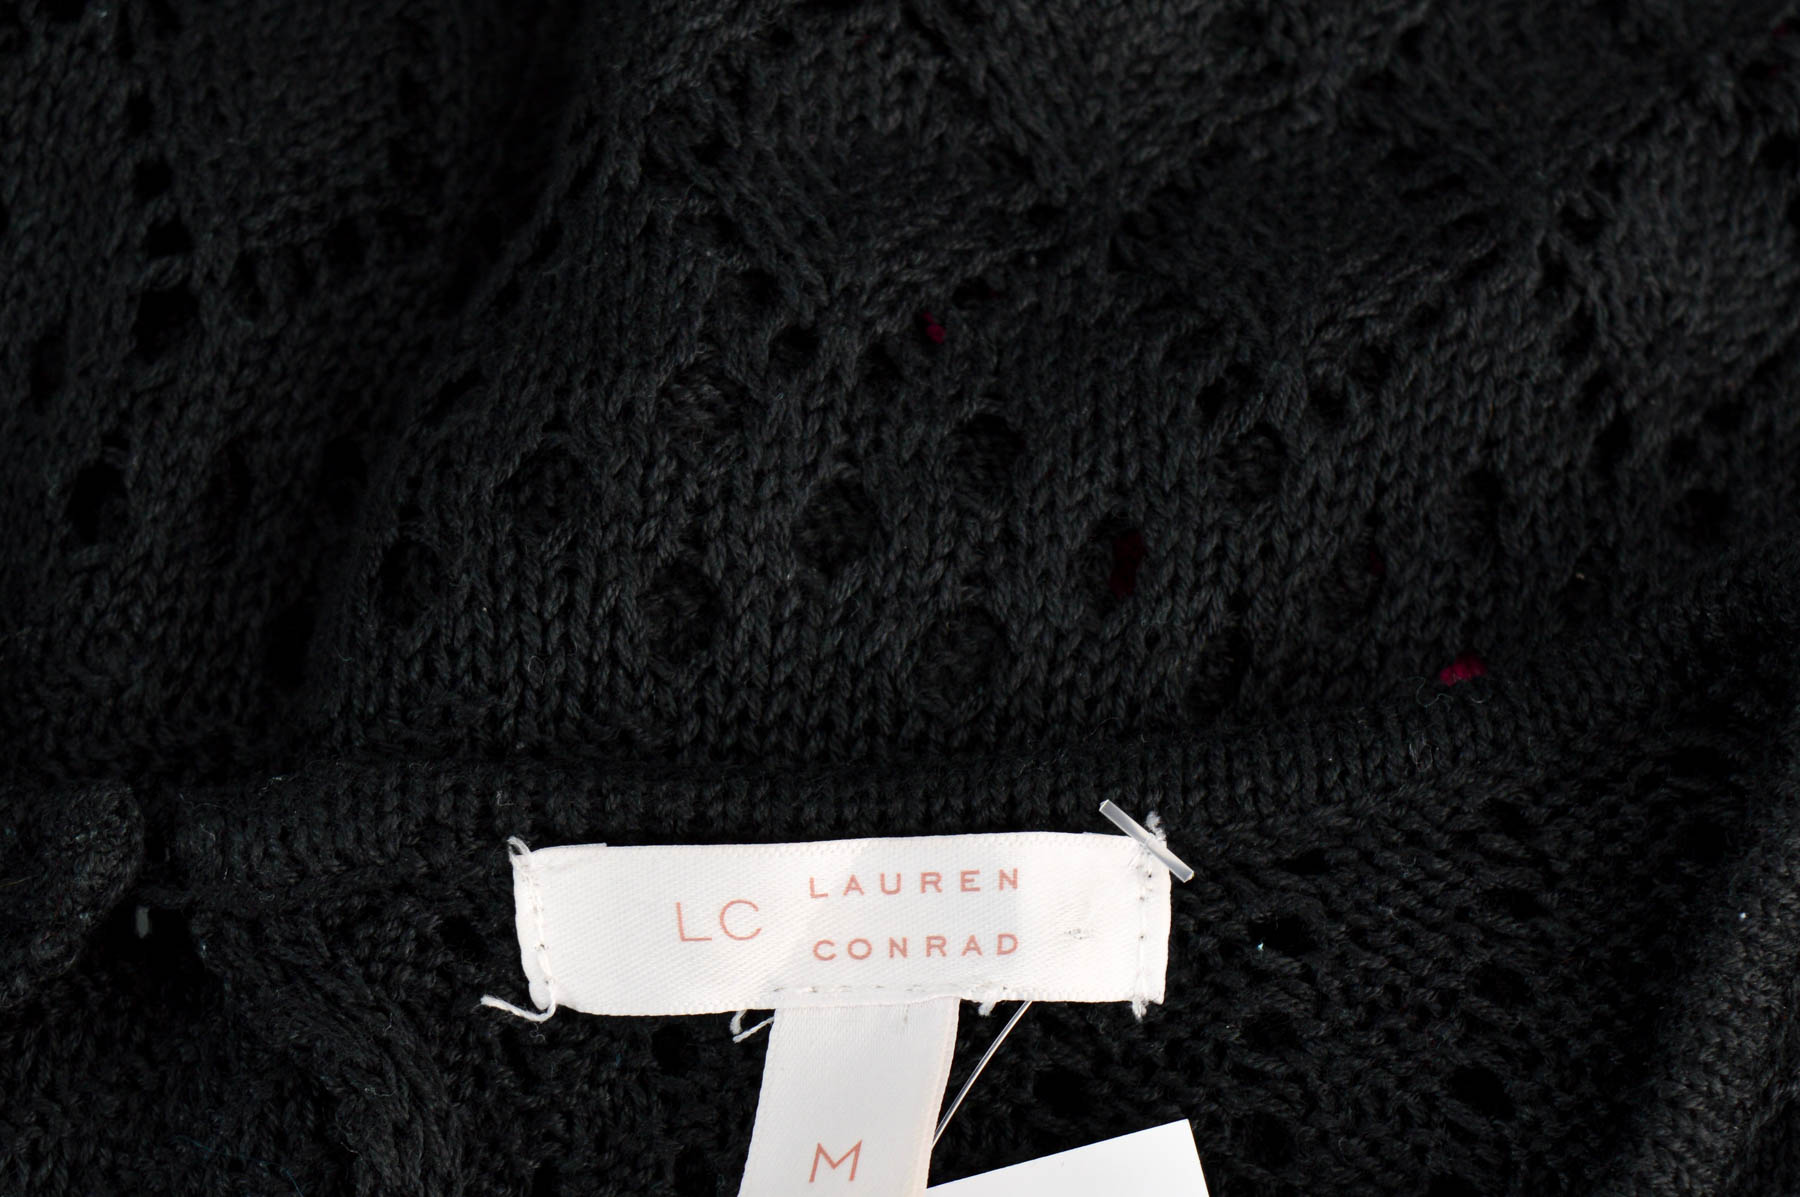 Γυναικείο πουλόβερ - LC LAUREN CONRAD - 2